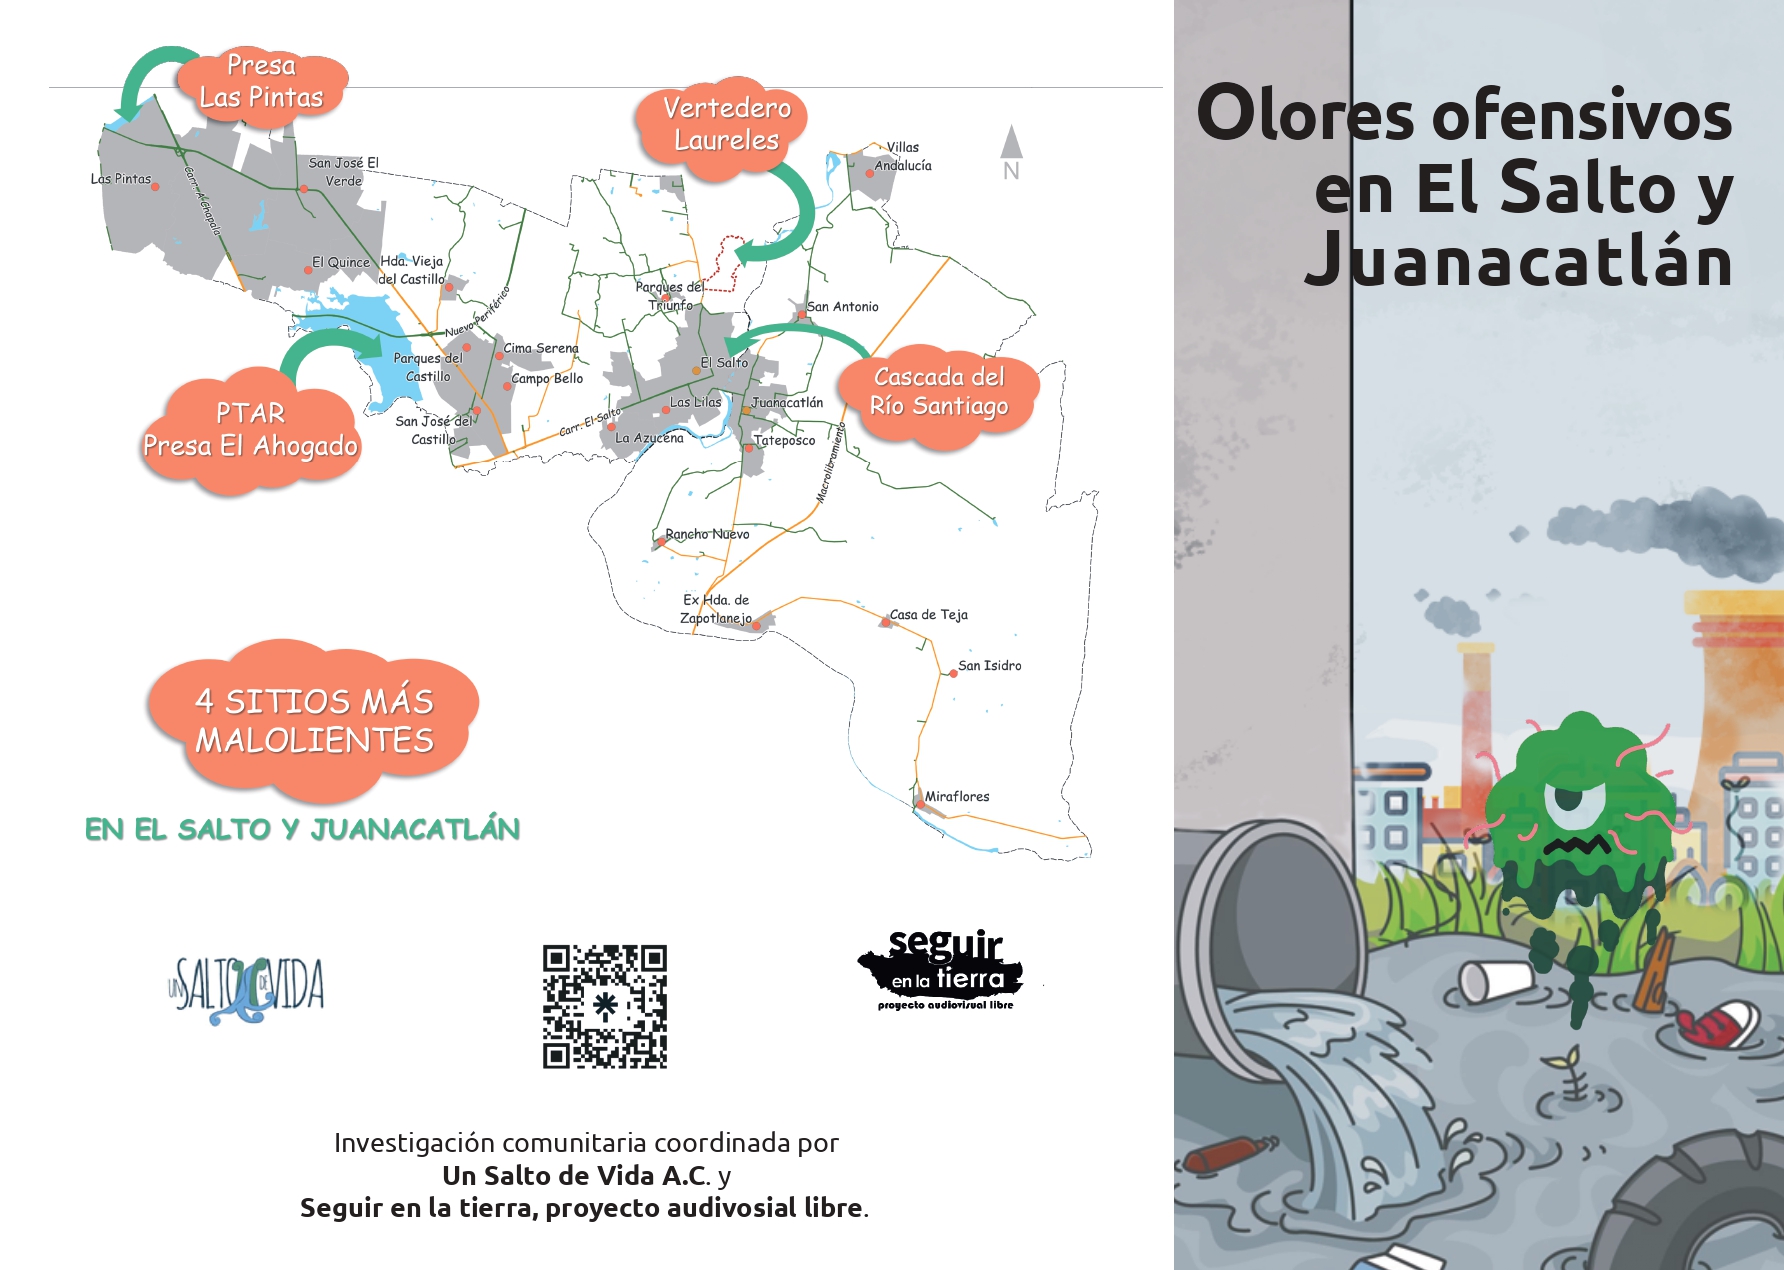 ¿Cuál es la fuente de los Olores Ofensivos en El Salto y Juanacatlán?